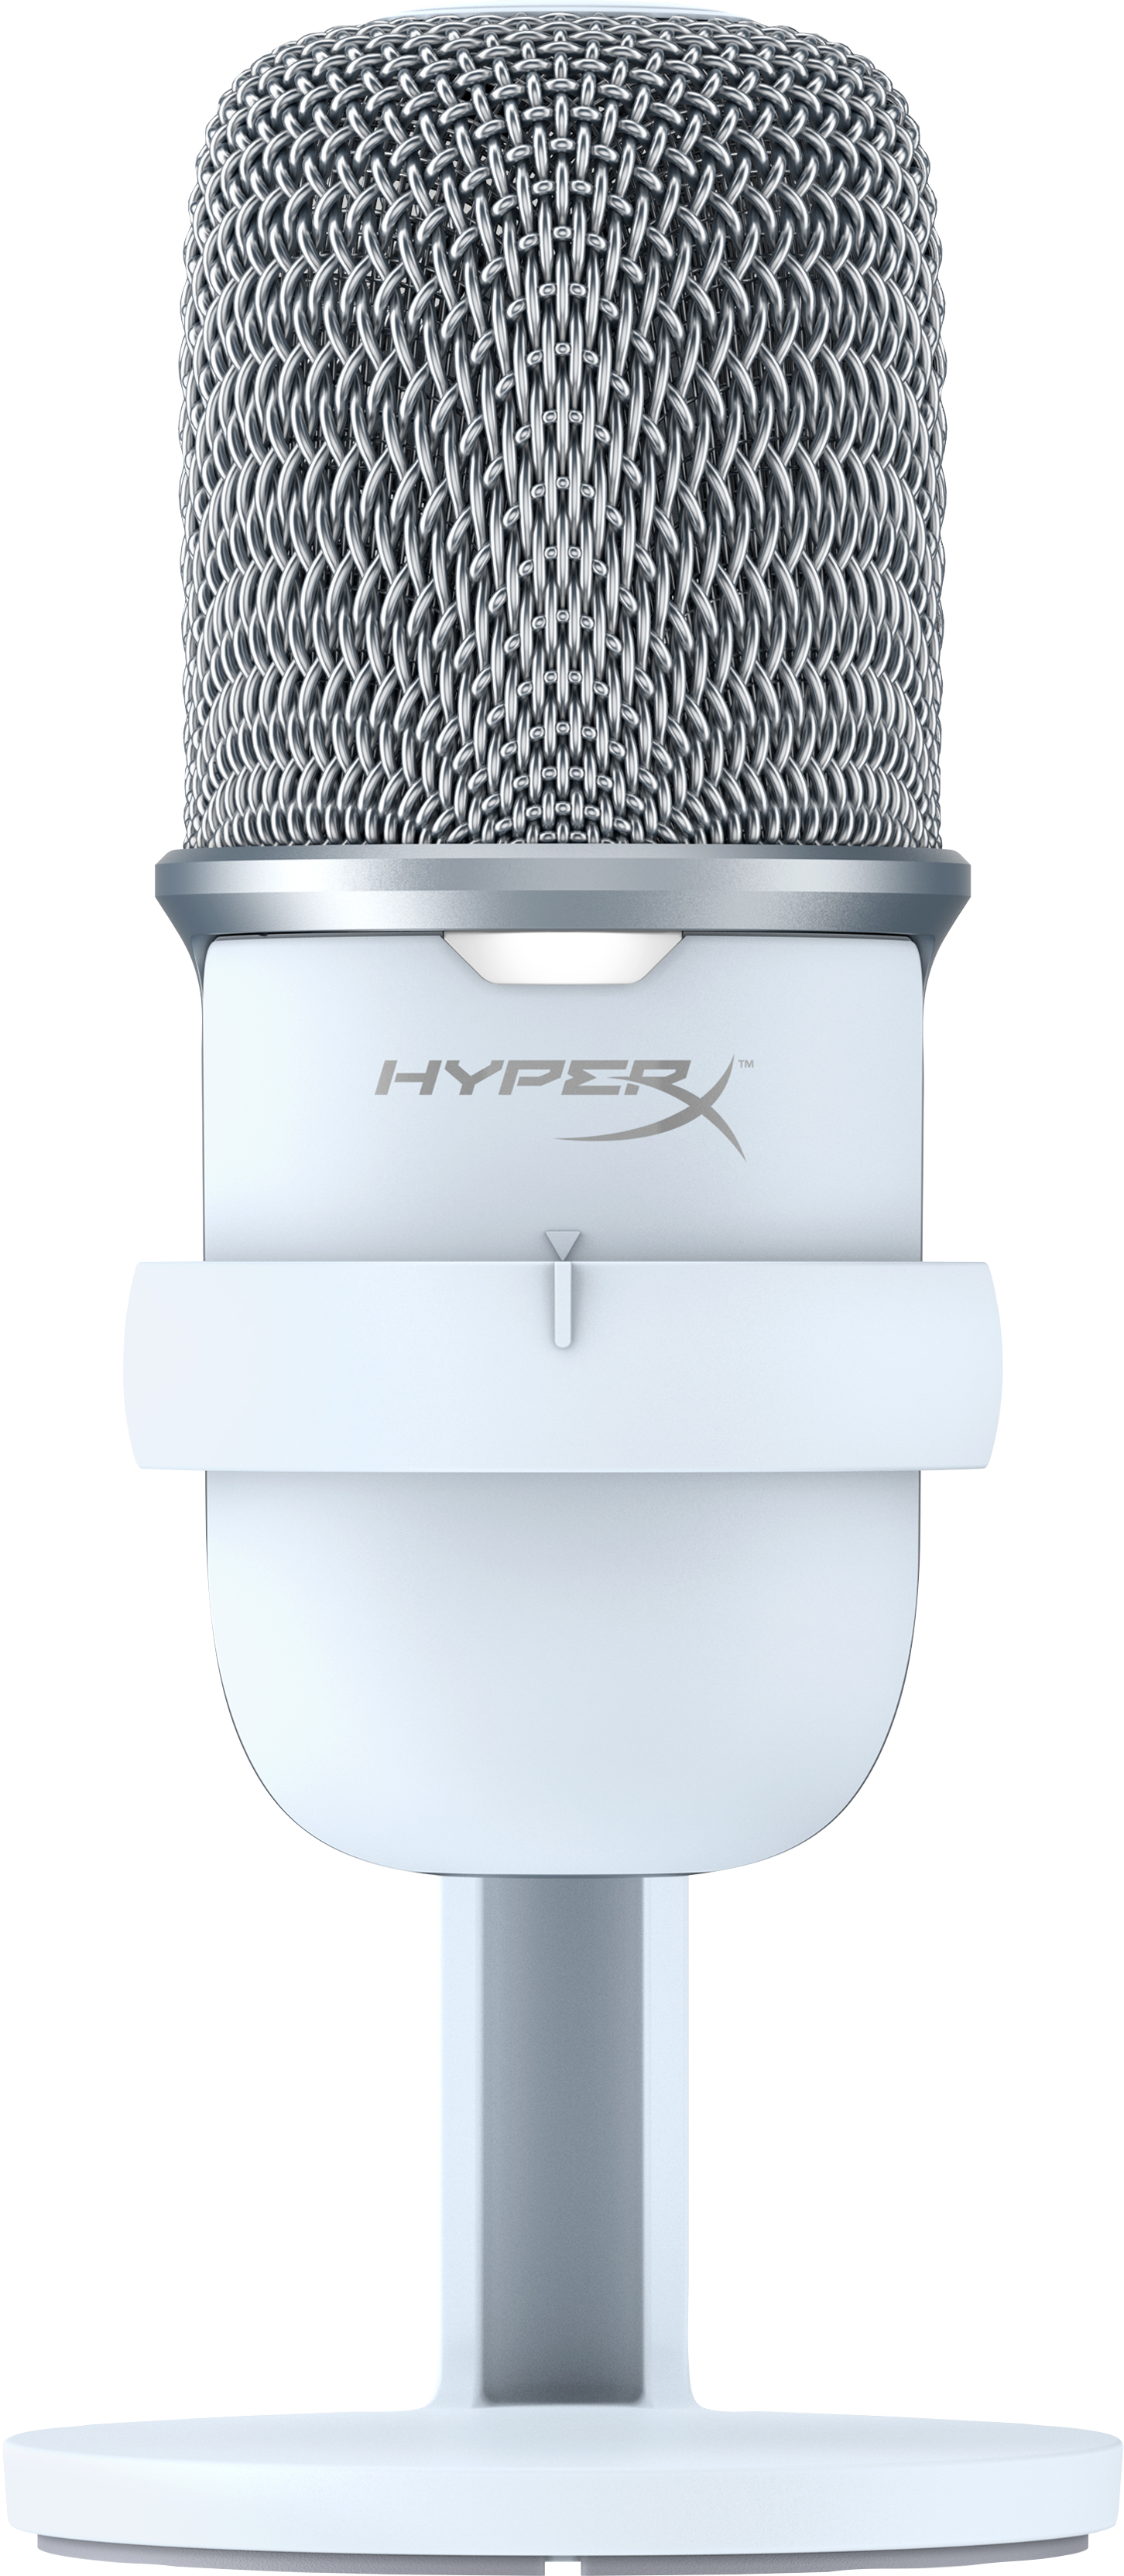 Image of HyperX SoloCast - USB Microphone (White) Bianco Microfono per console di gioco